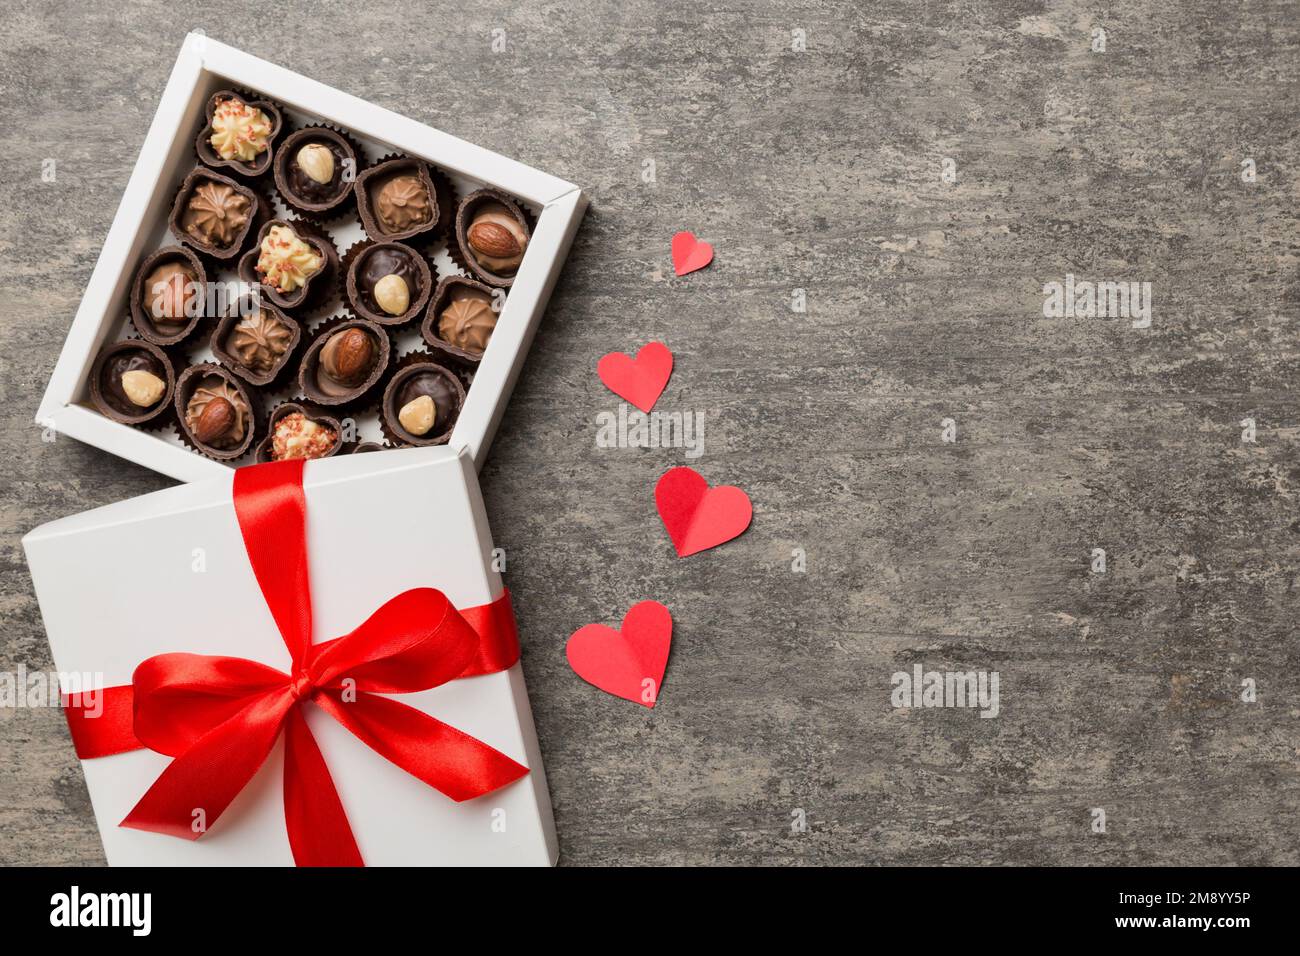 Deliciosos Bombones De Chocolate En Caja Roja Para El Día De San Valentín.  Vista Superior De Caja De Chocolates En Forma De Corazón Con Espacio De  Copia. Fotos, retratos, imágenes y fotografía